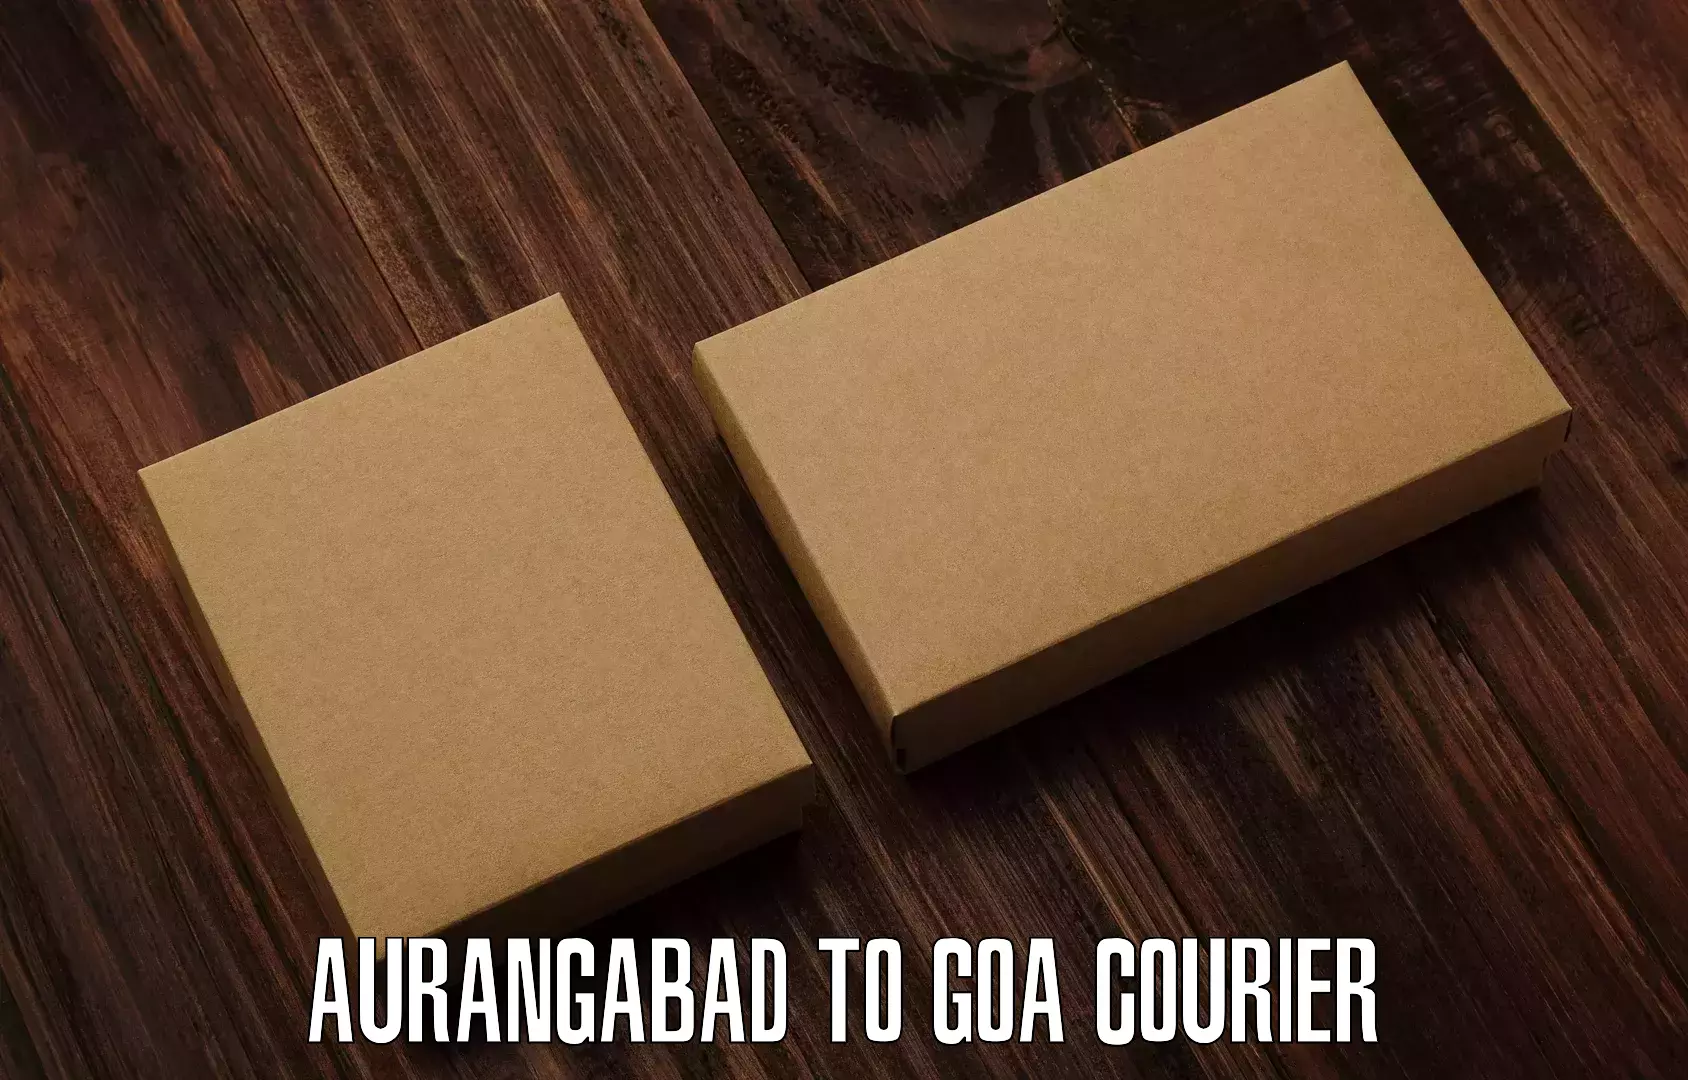 Expedited shipping methods Aurangabad to Panaji